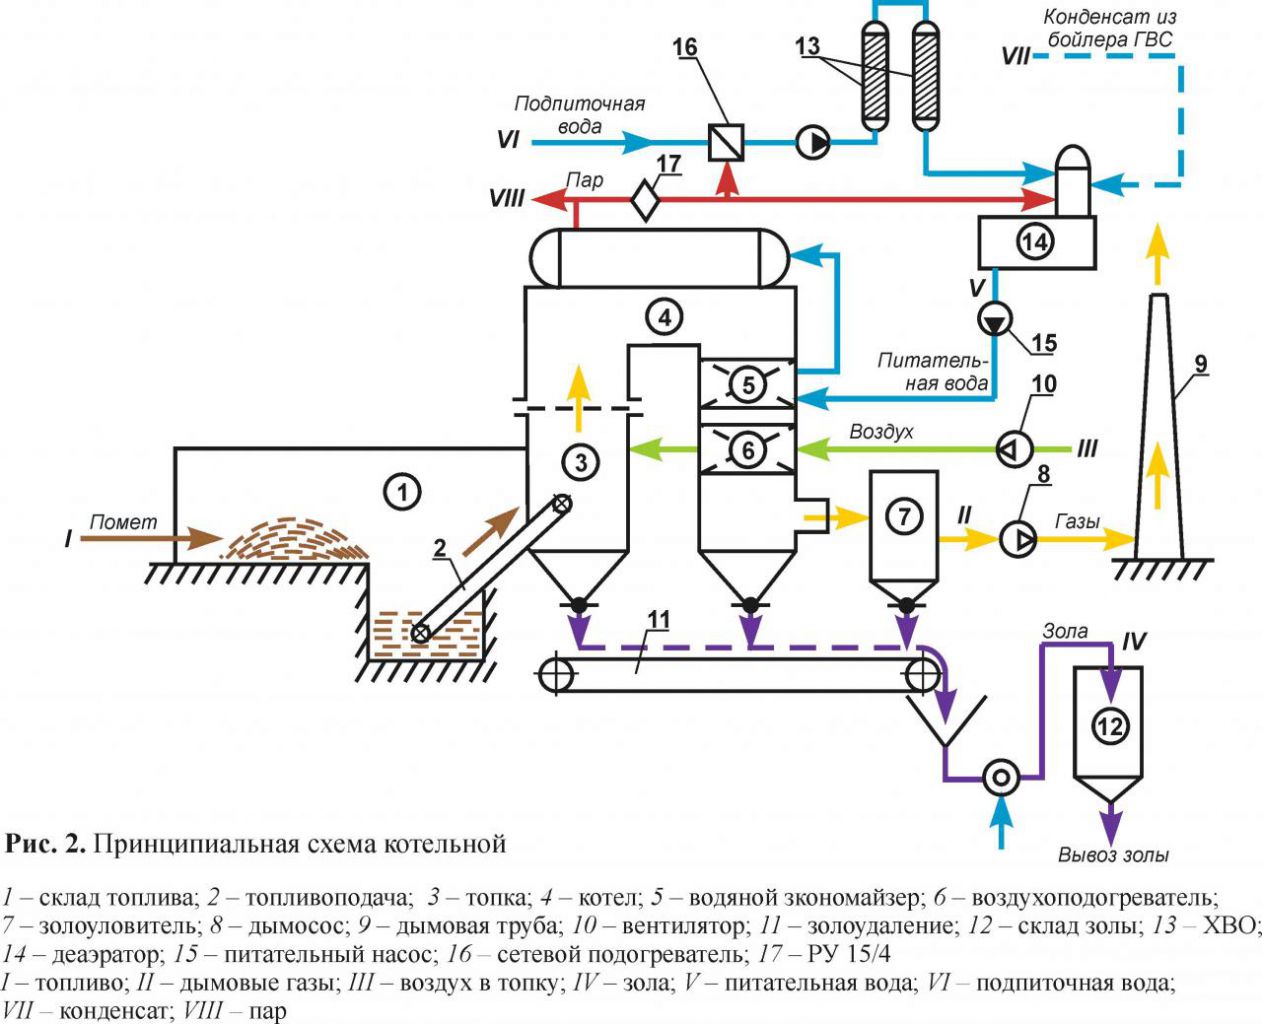 Схема обвязки водогрейного котла с деаэратором